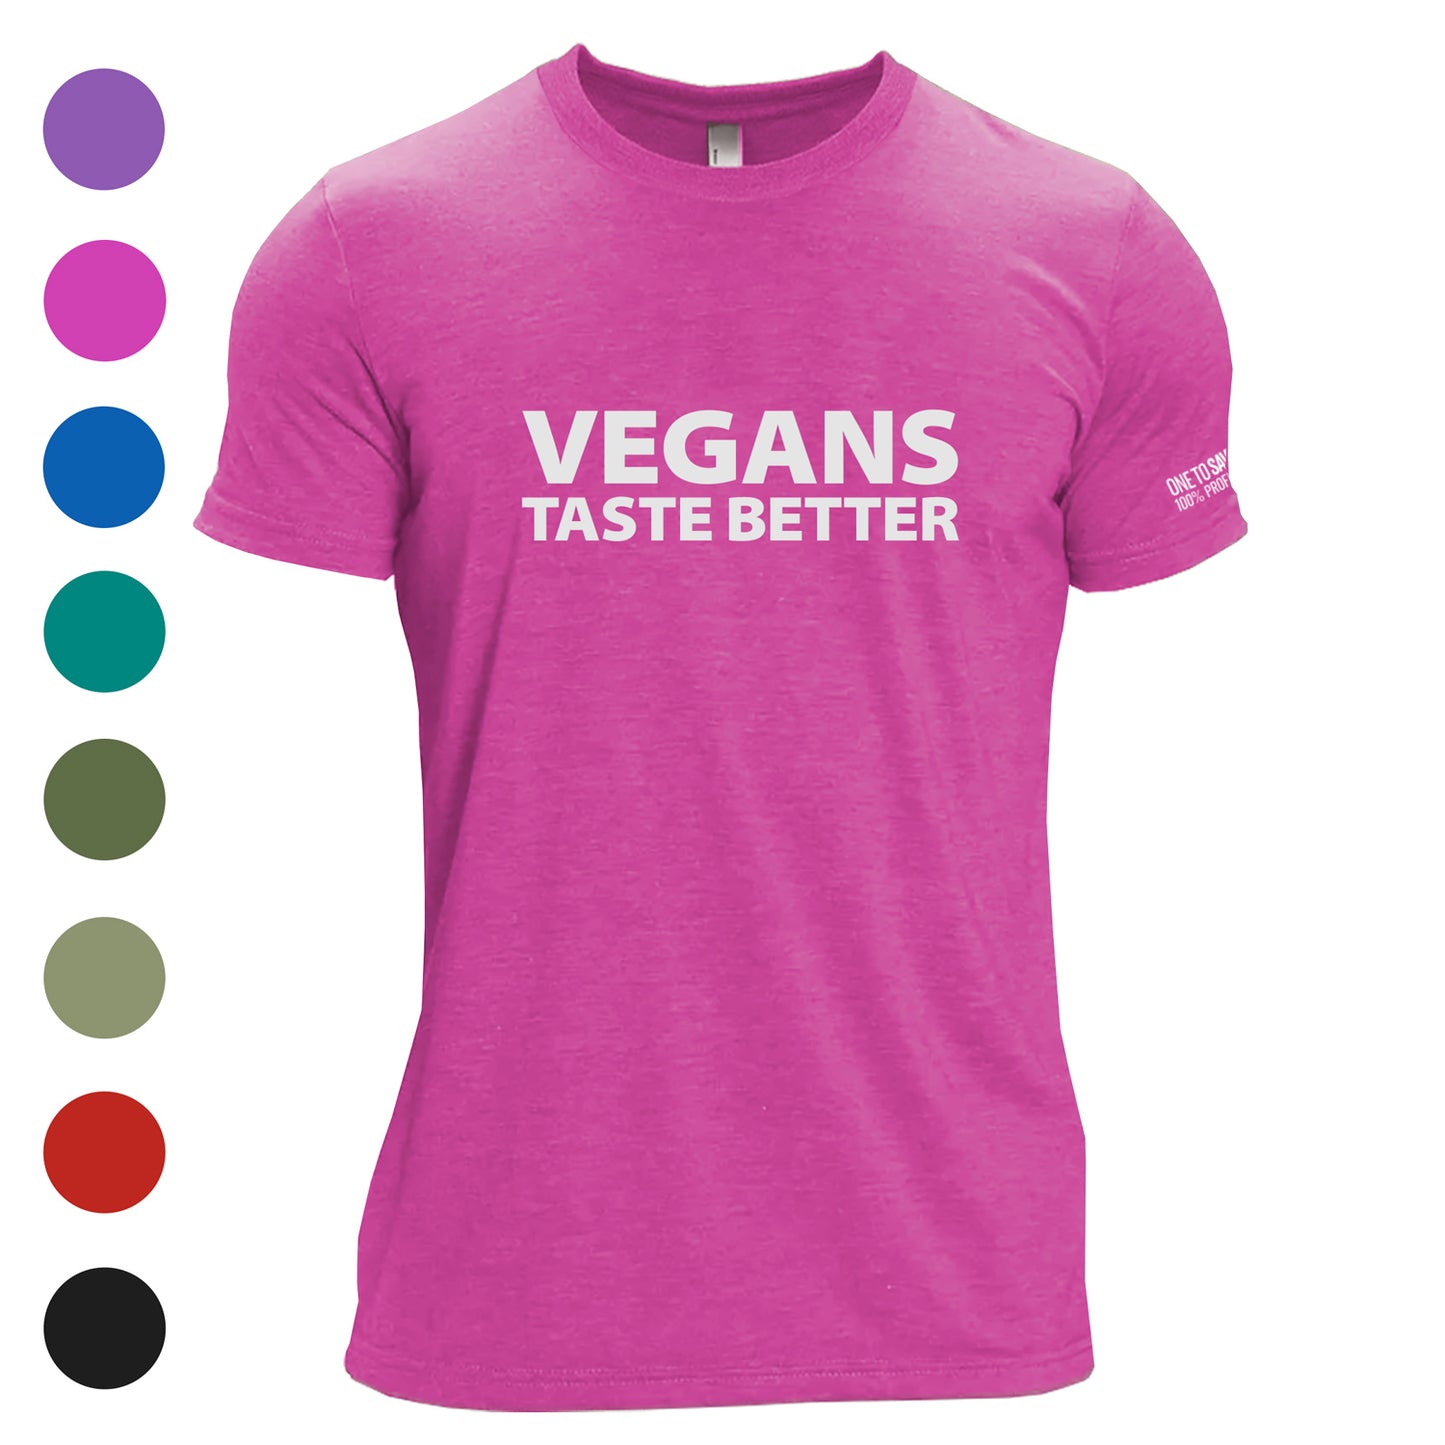 Unisex Vegans Taste Better Tri-Blend T-Shirt - Available in 9 Colors